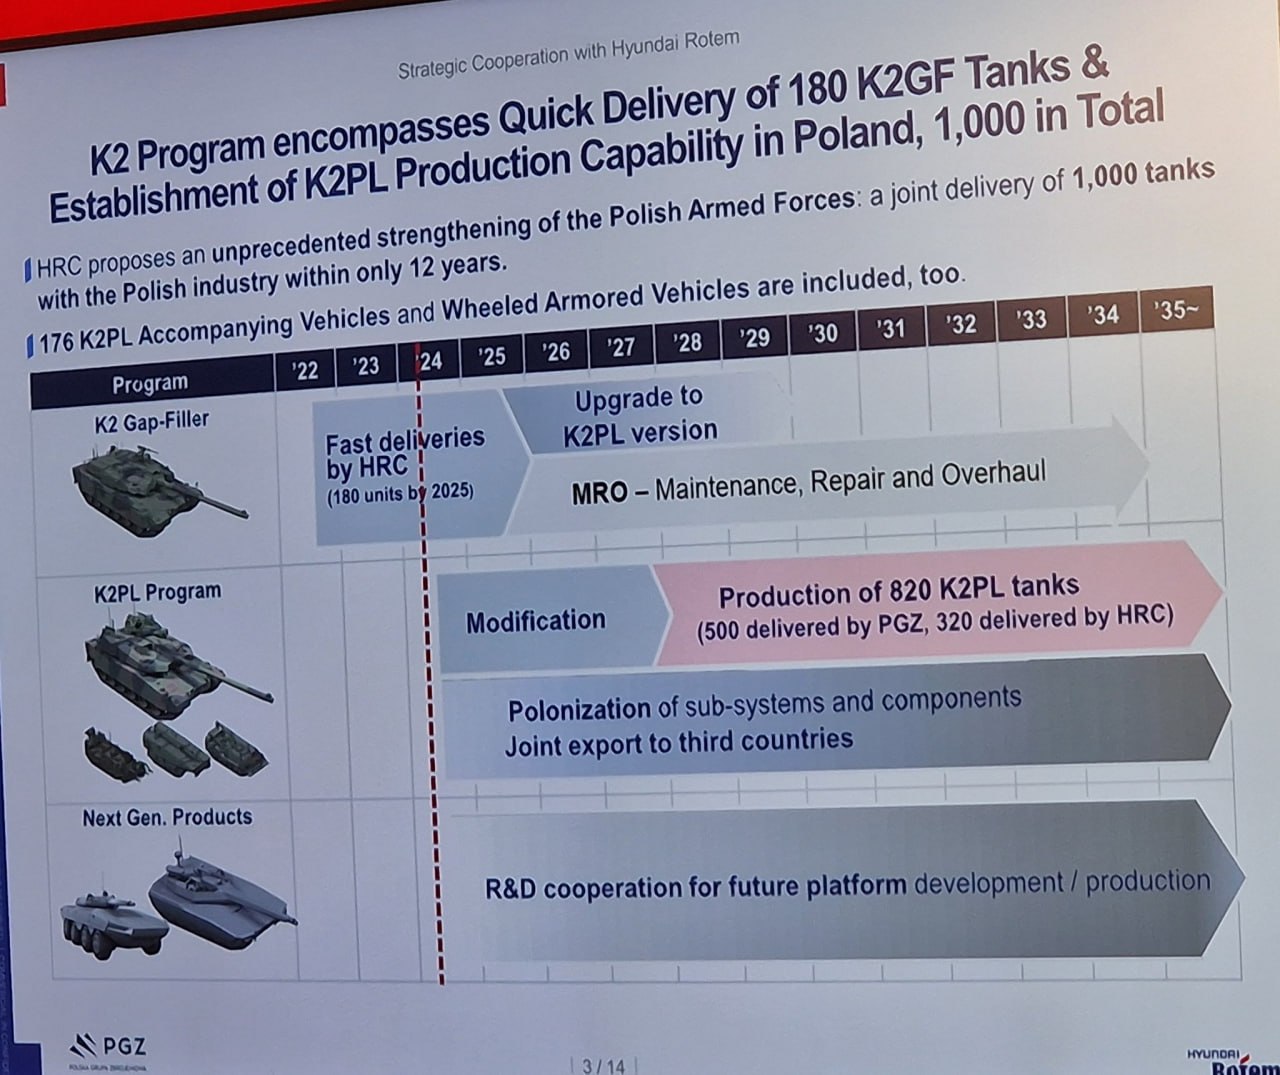 Lộ trình triển khai sản xuất K2PL ở Ba Lan / Defense Express / Việc sản xuất xe tăng K2PL của Ba Lan vẫn chưa bắt đầu vào năm 2027 nhưng đã có tranh cãi về vị trí nhà máy